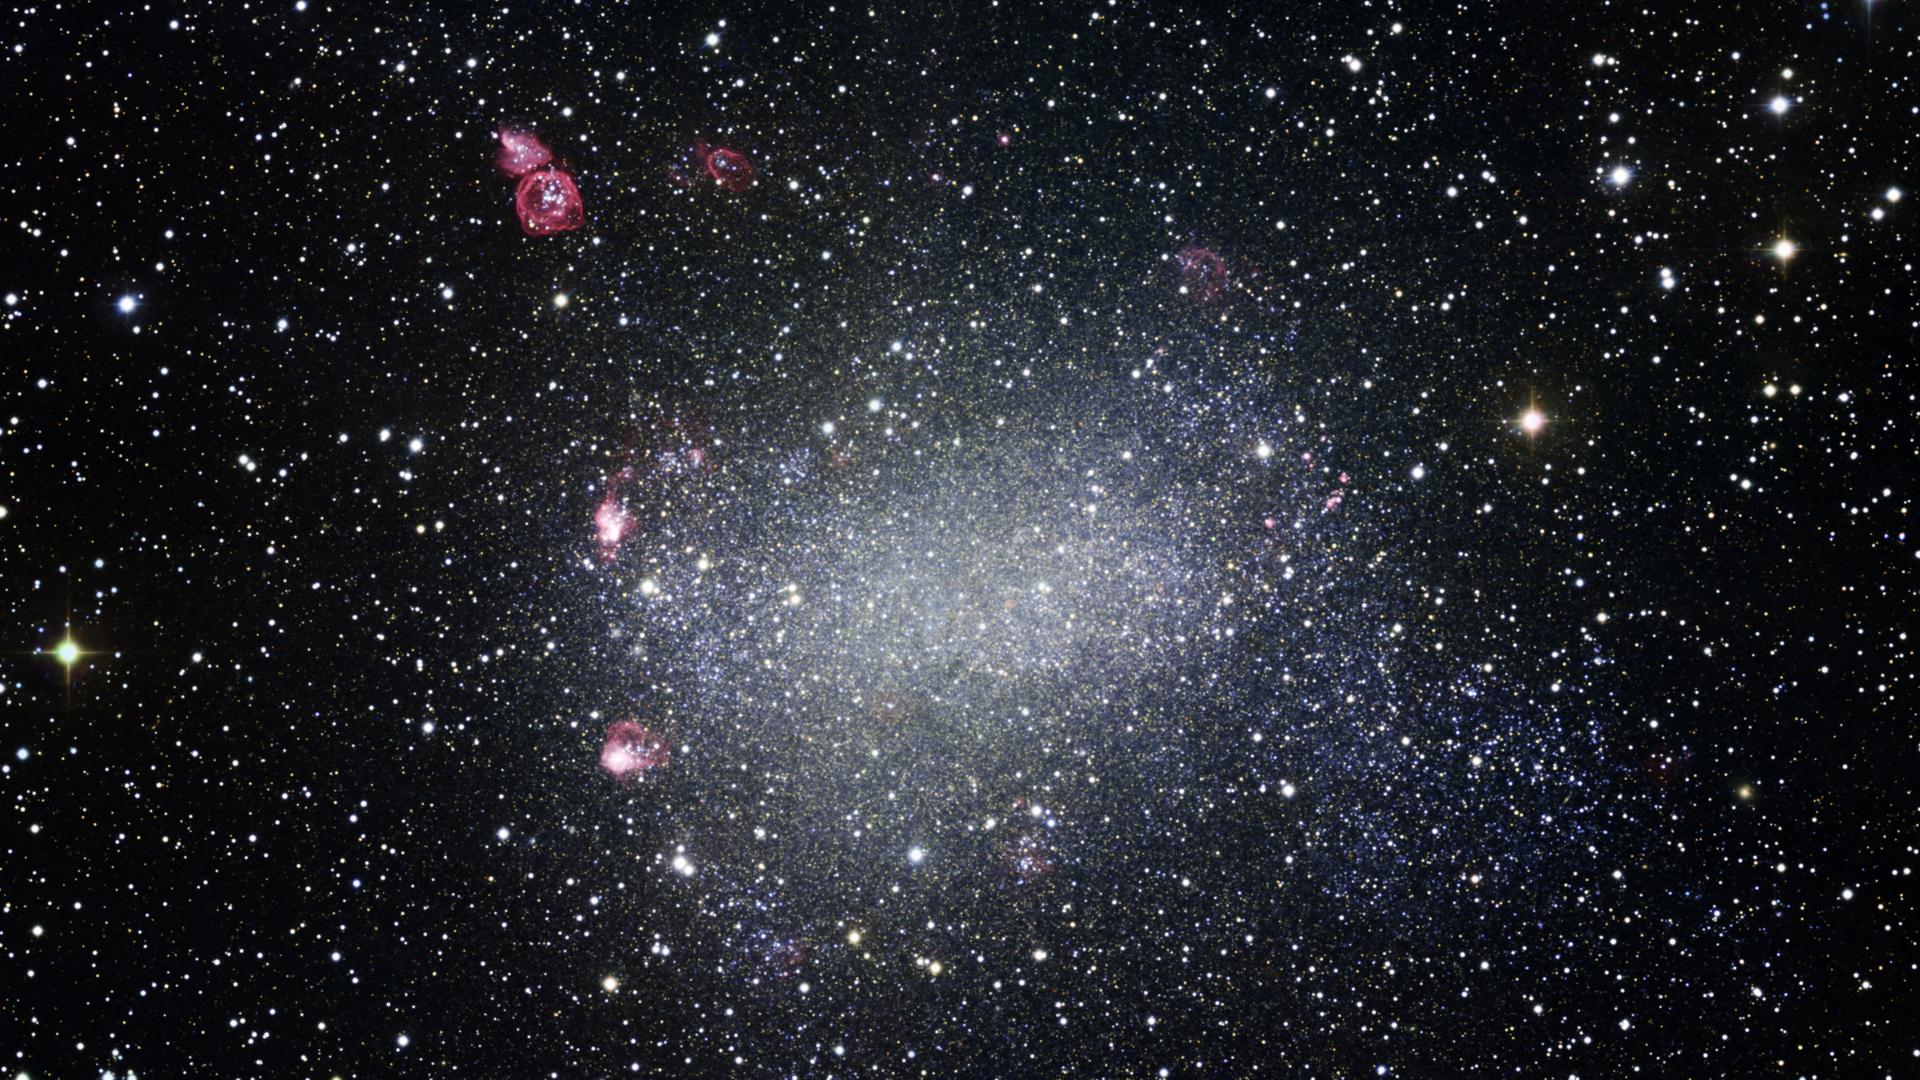 Die Zwerggalaxie NGC 6822 ist nur rund eine Million Lichtjahre von unserer Milchstraße entfernt.